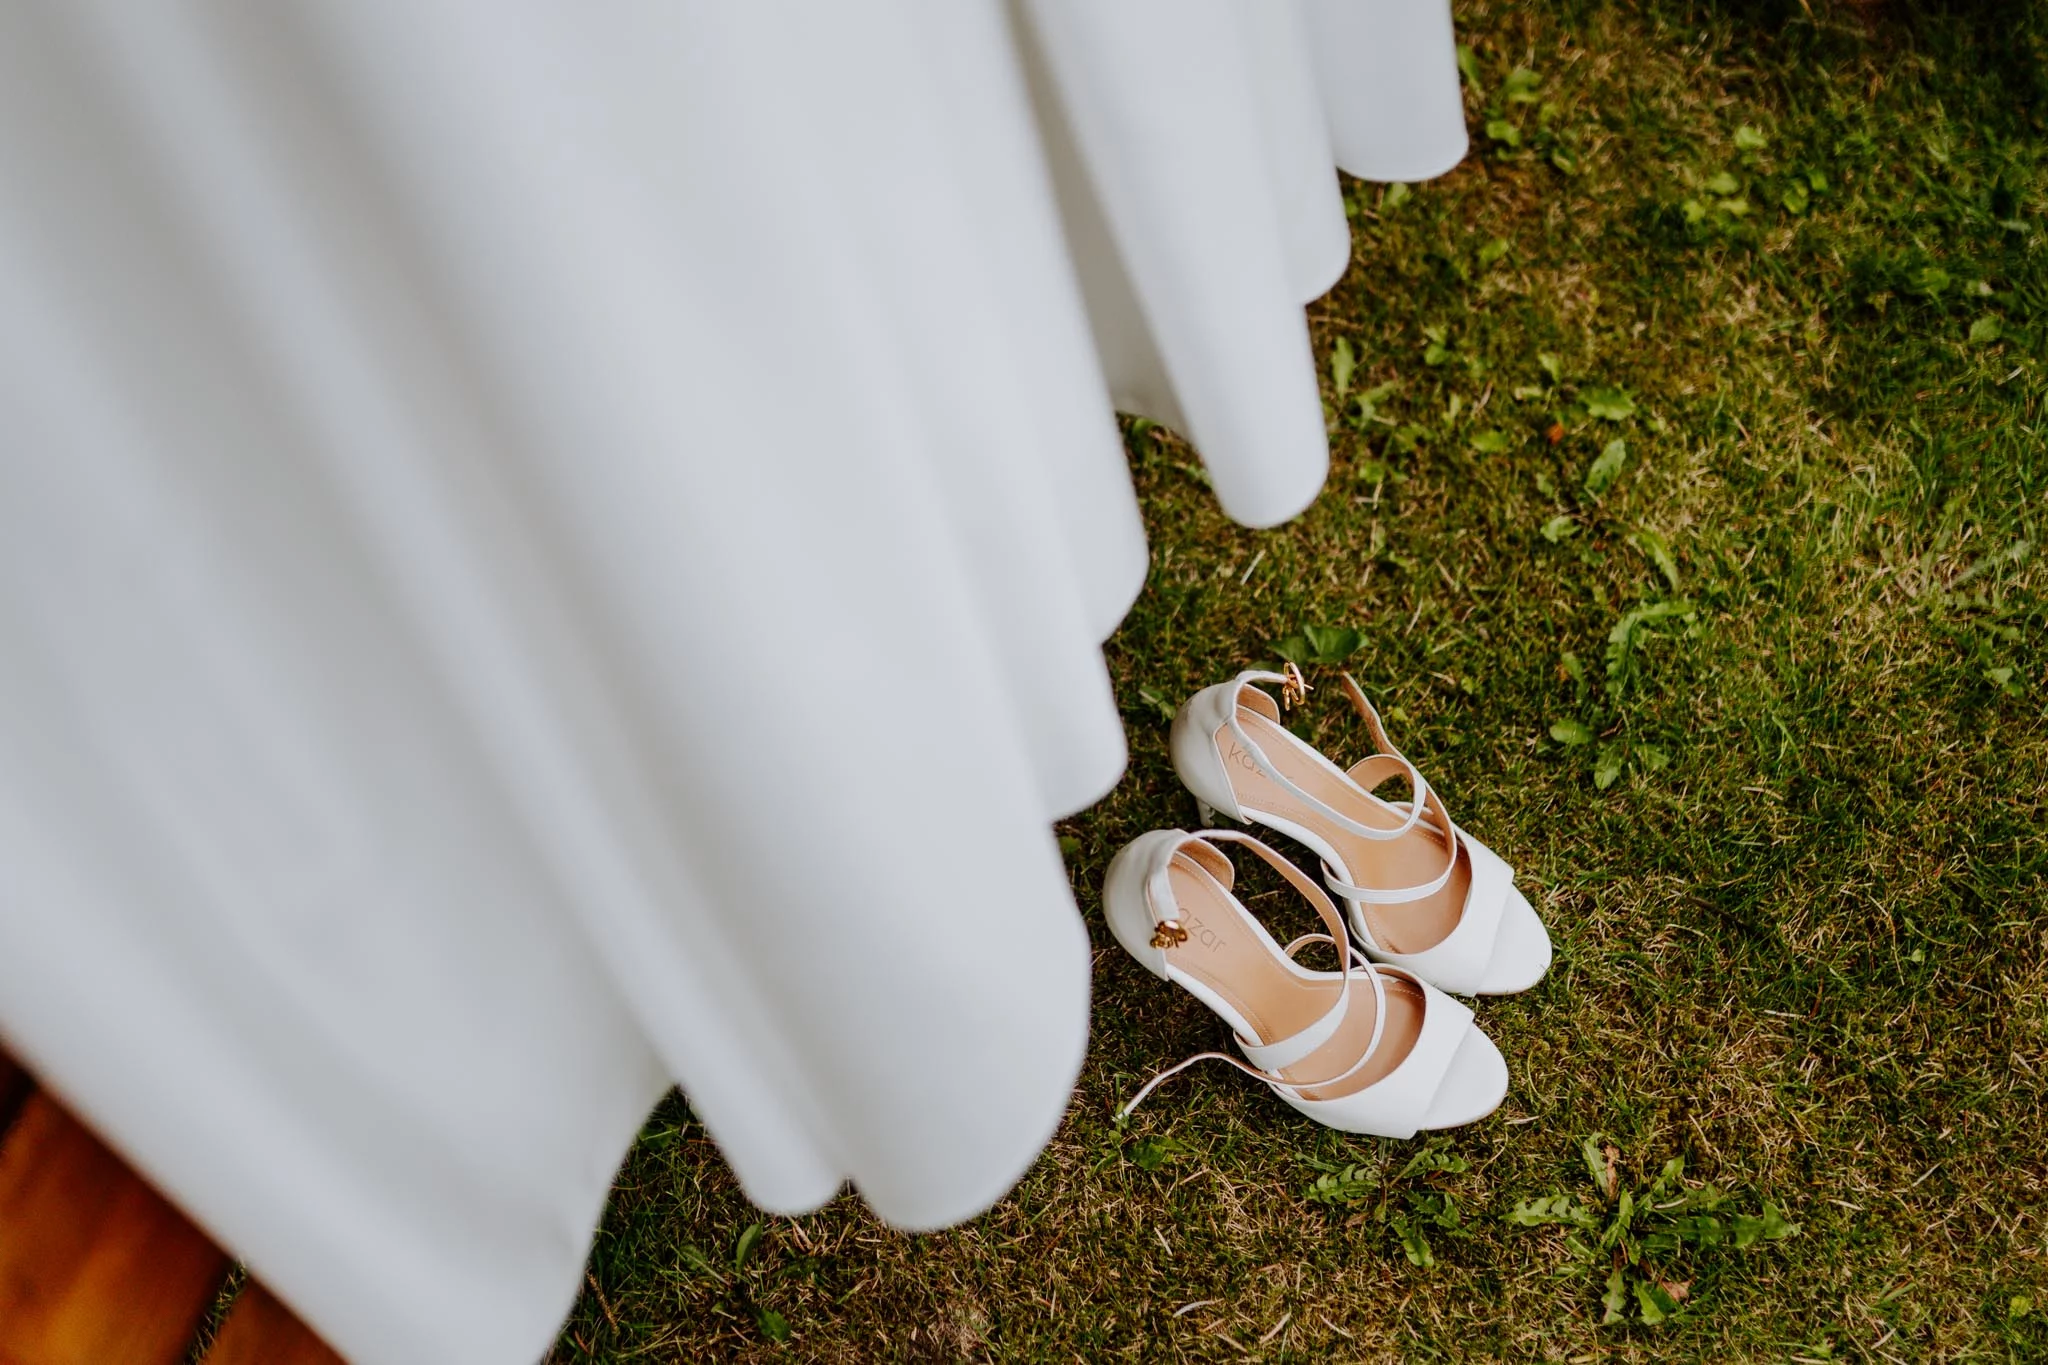 Buty i suknia Panny Młodej podczas przygotowań do ślubu